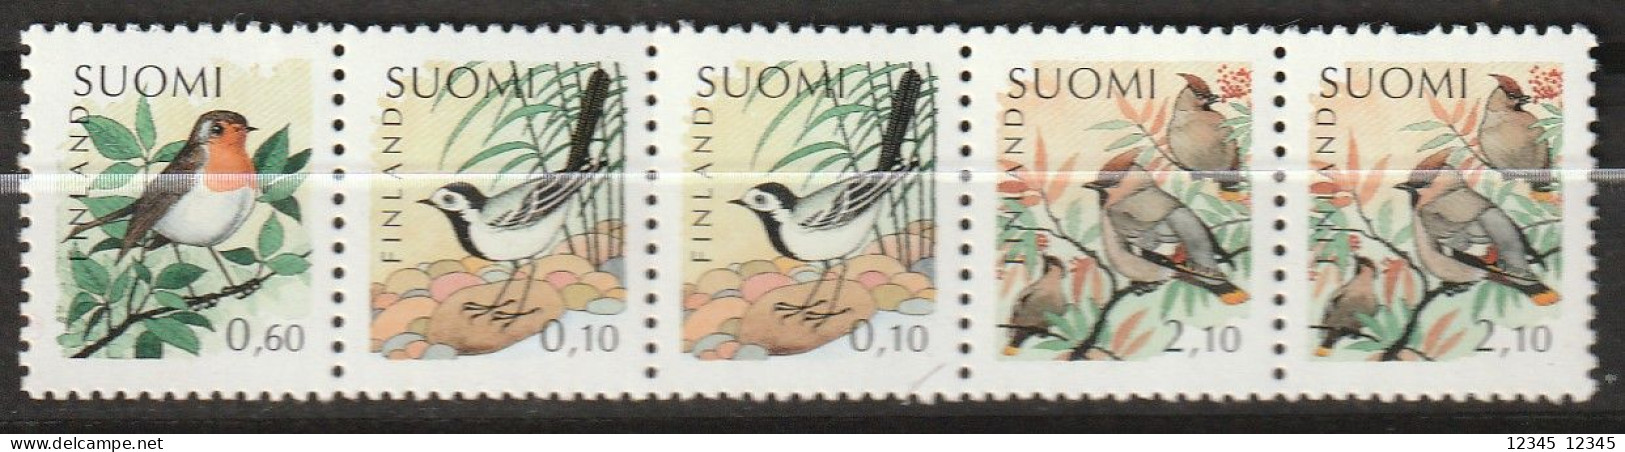 Finland 1992, Postfris MNH, Birds - Markenheftchen